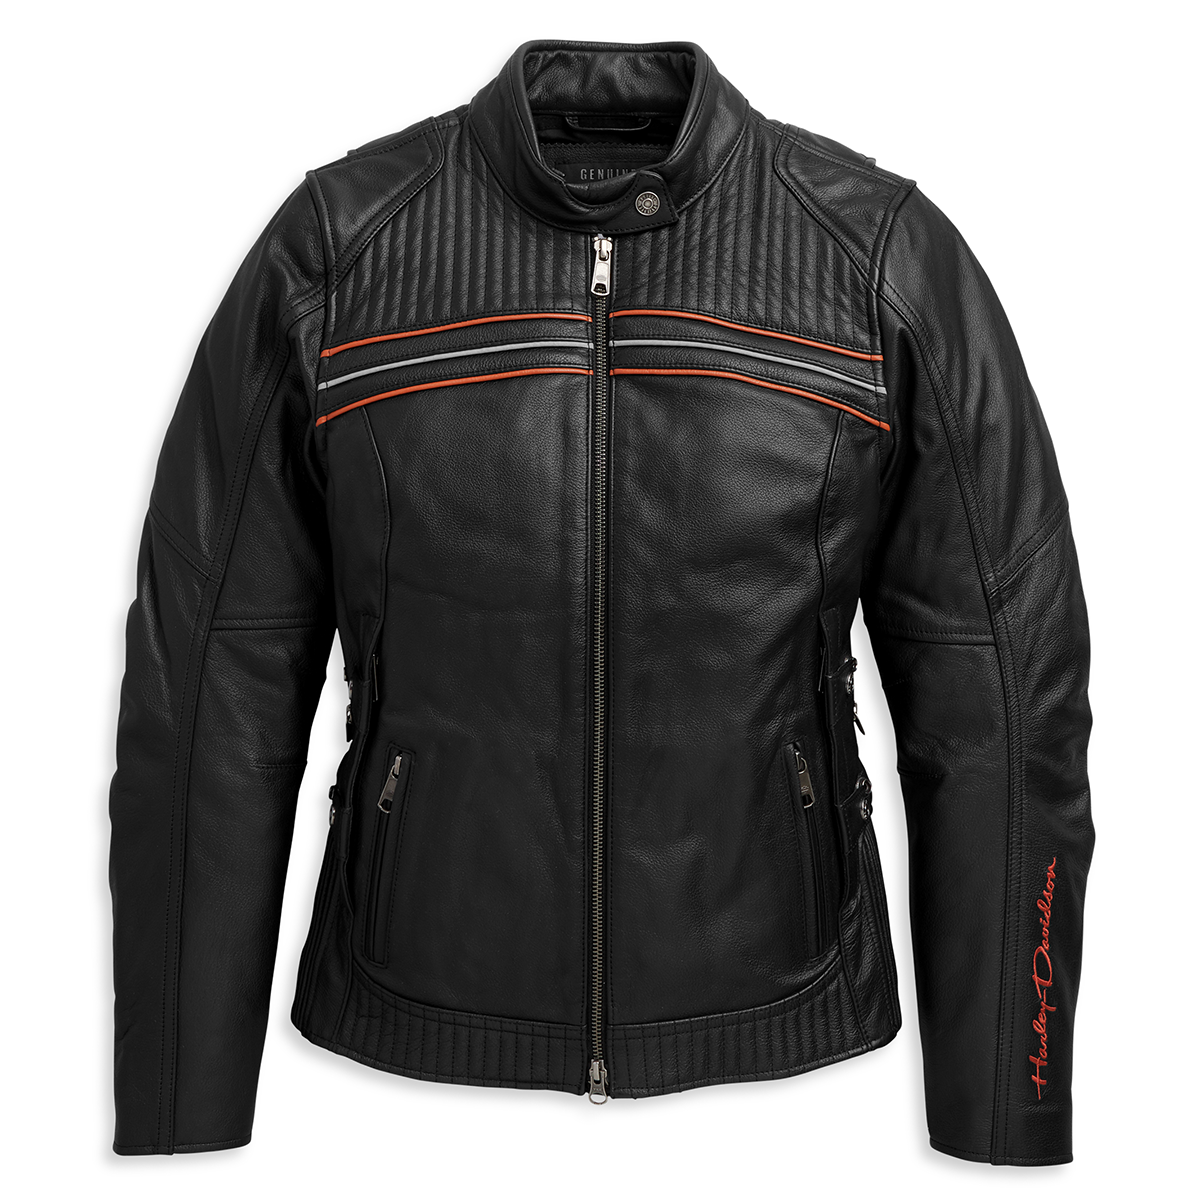 Harley-Davidson I-94 Women's Leather Jacket